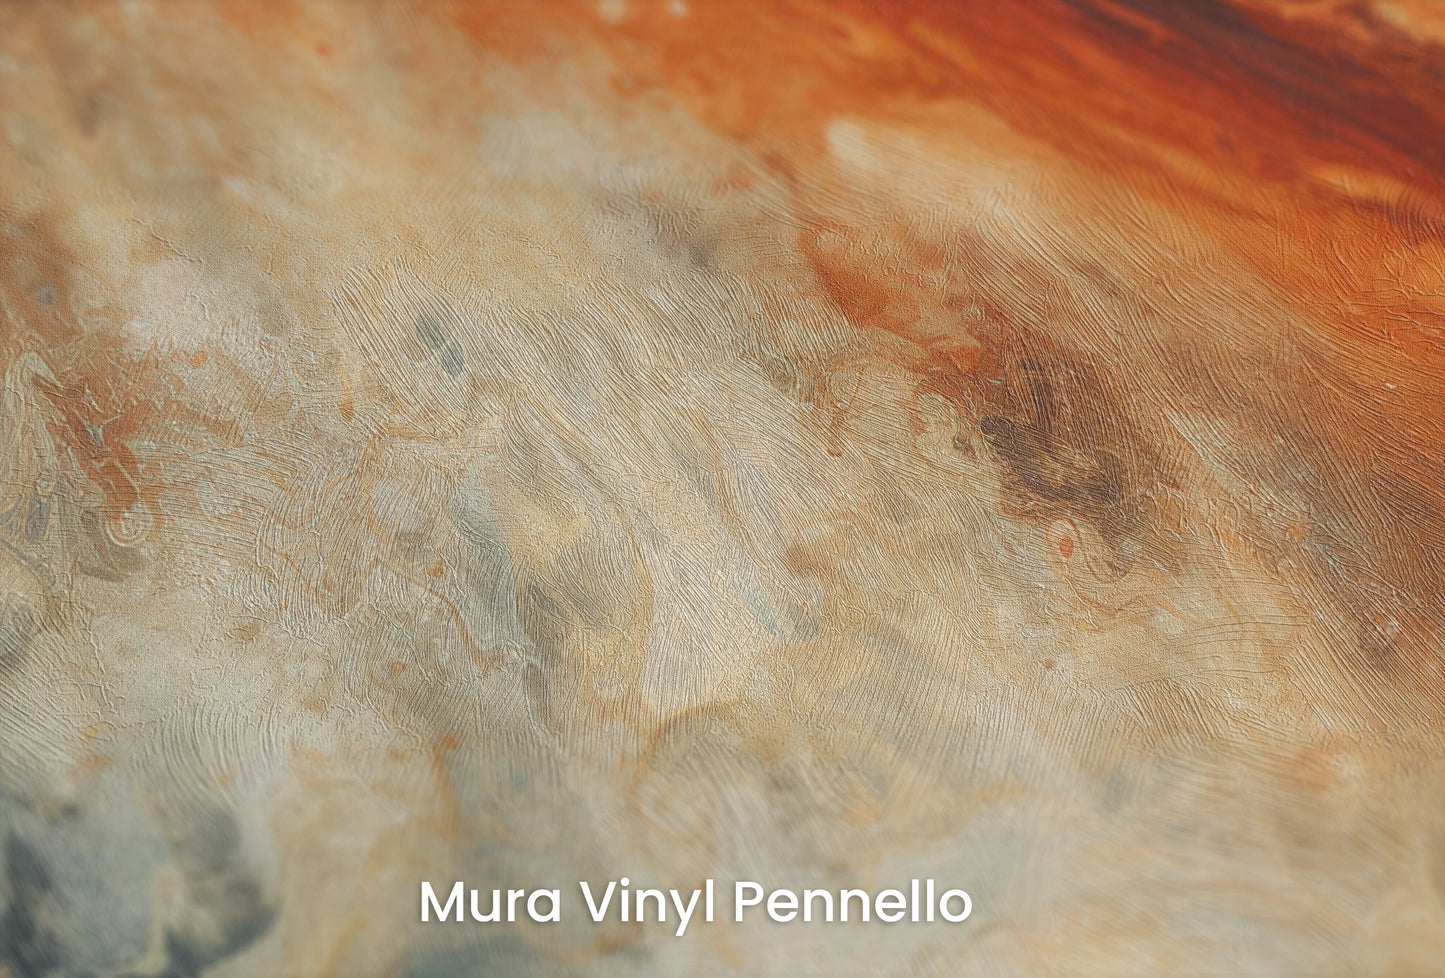 Zbliżenie na artystyczną fototapetę o nazwie Jupiter's Storm na podłożu Mura Vinyl Pennello - faktura pociągnięć pędzla malarskiego.